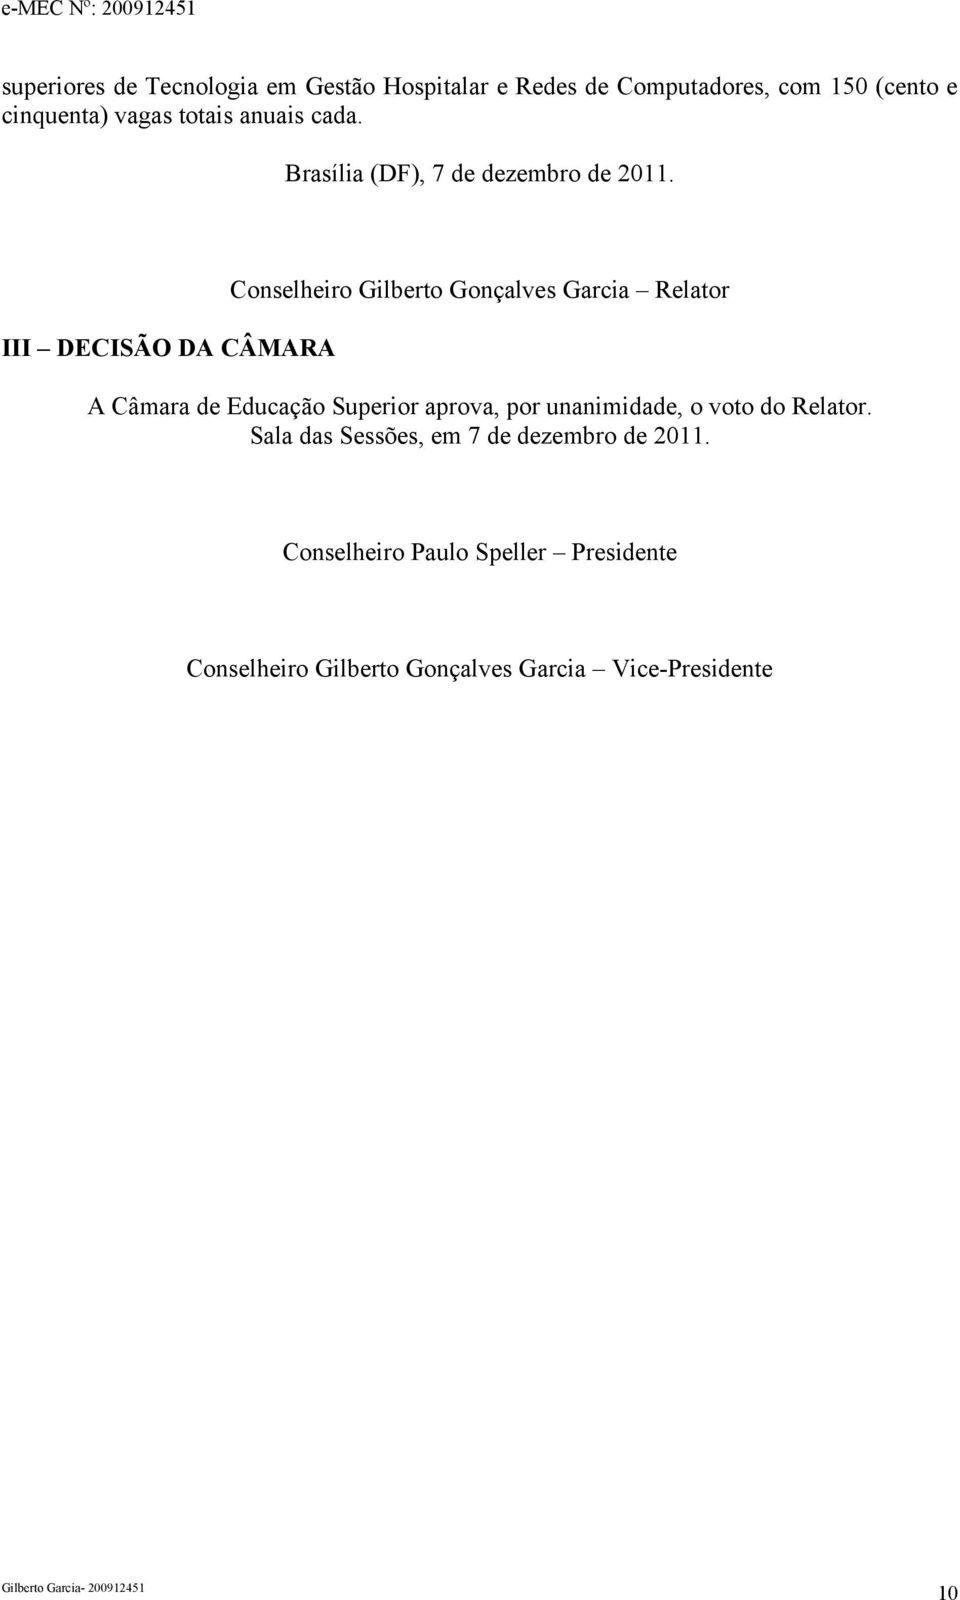 III DECISÃO DA CÂMARA Conselheiro Gilberto Gonçalves Garcia Relator A Câmara de Educação Superior aprova, por